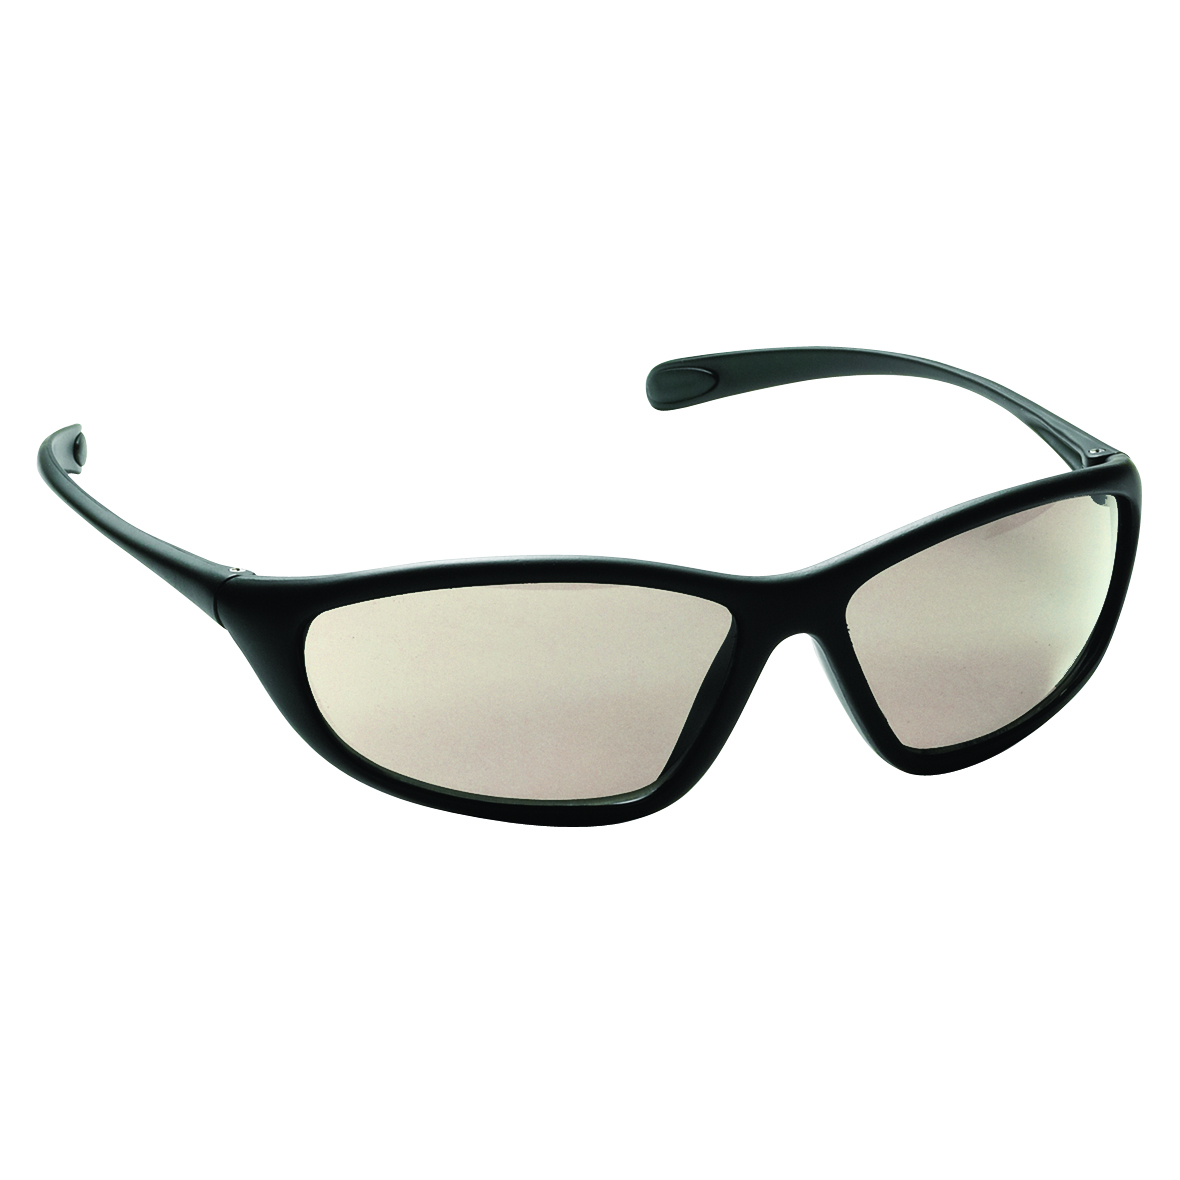 Spyder Safety Glasses, Black Frame, Indoor-Outdoor Lens